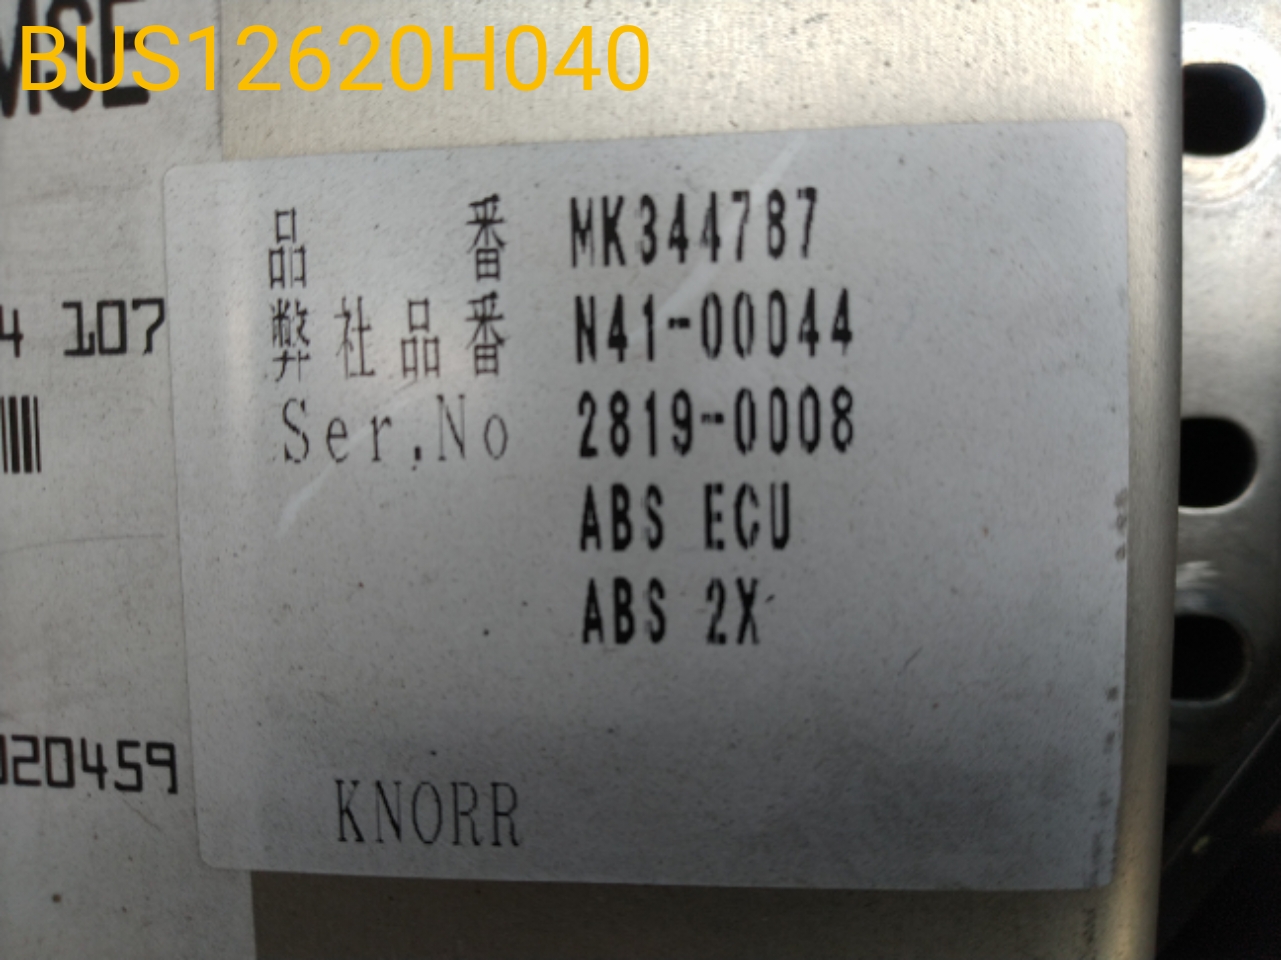 サンキン 物置 レスパス ギングロ ▽524-7256 EL-2217(GK) 1台 通販